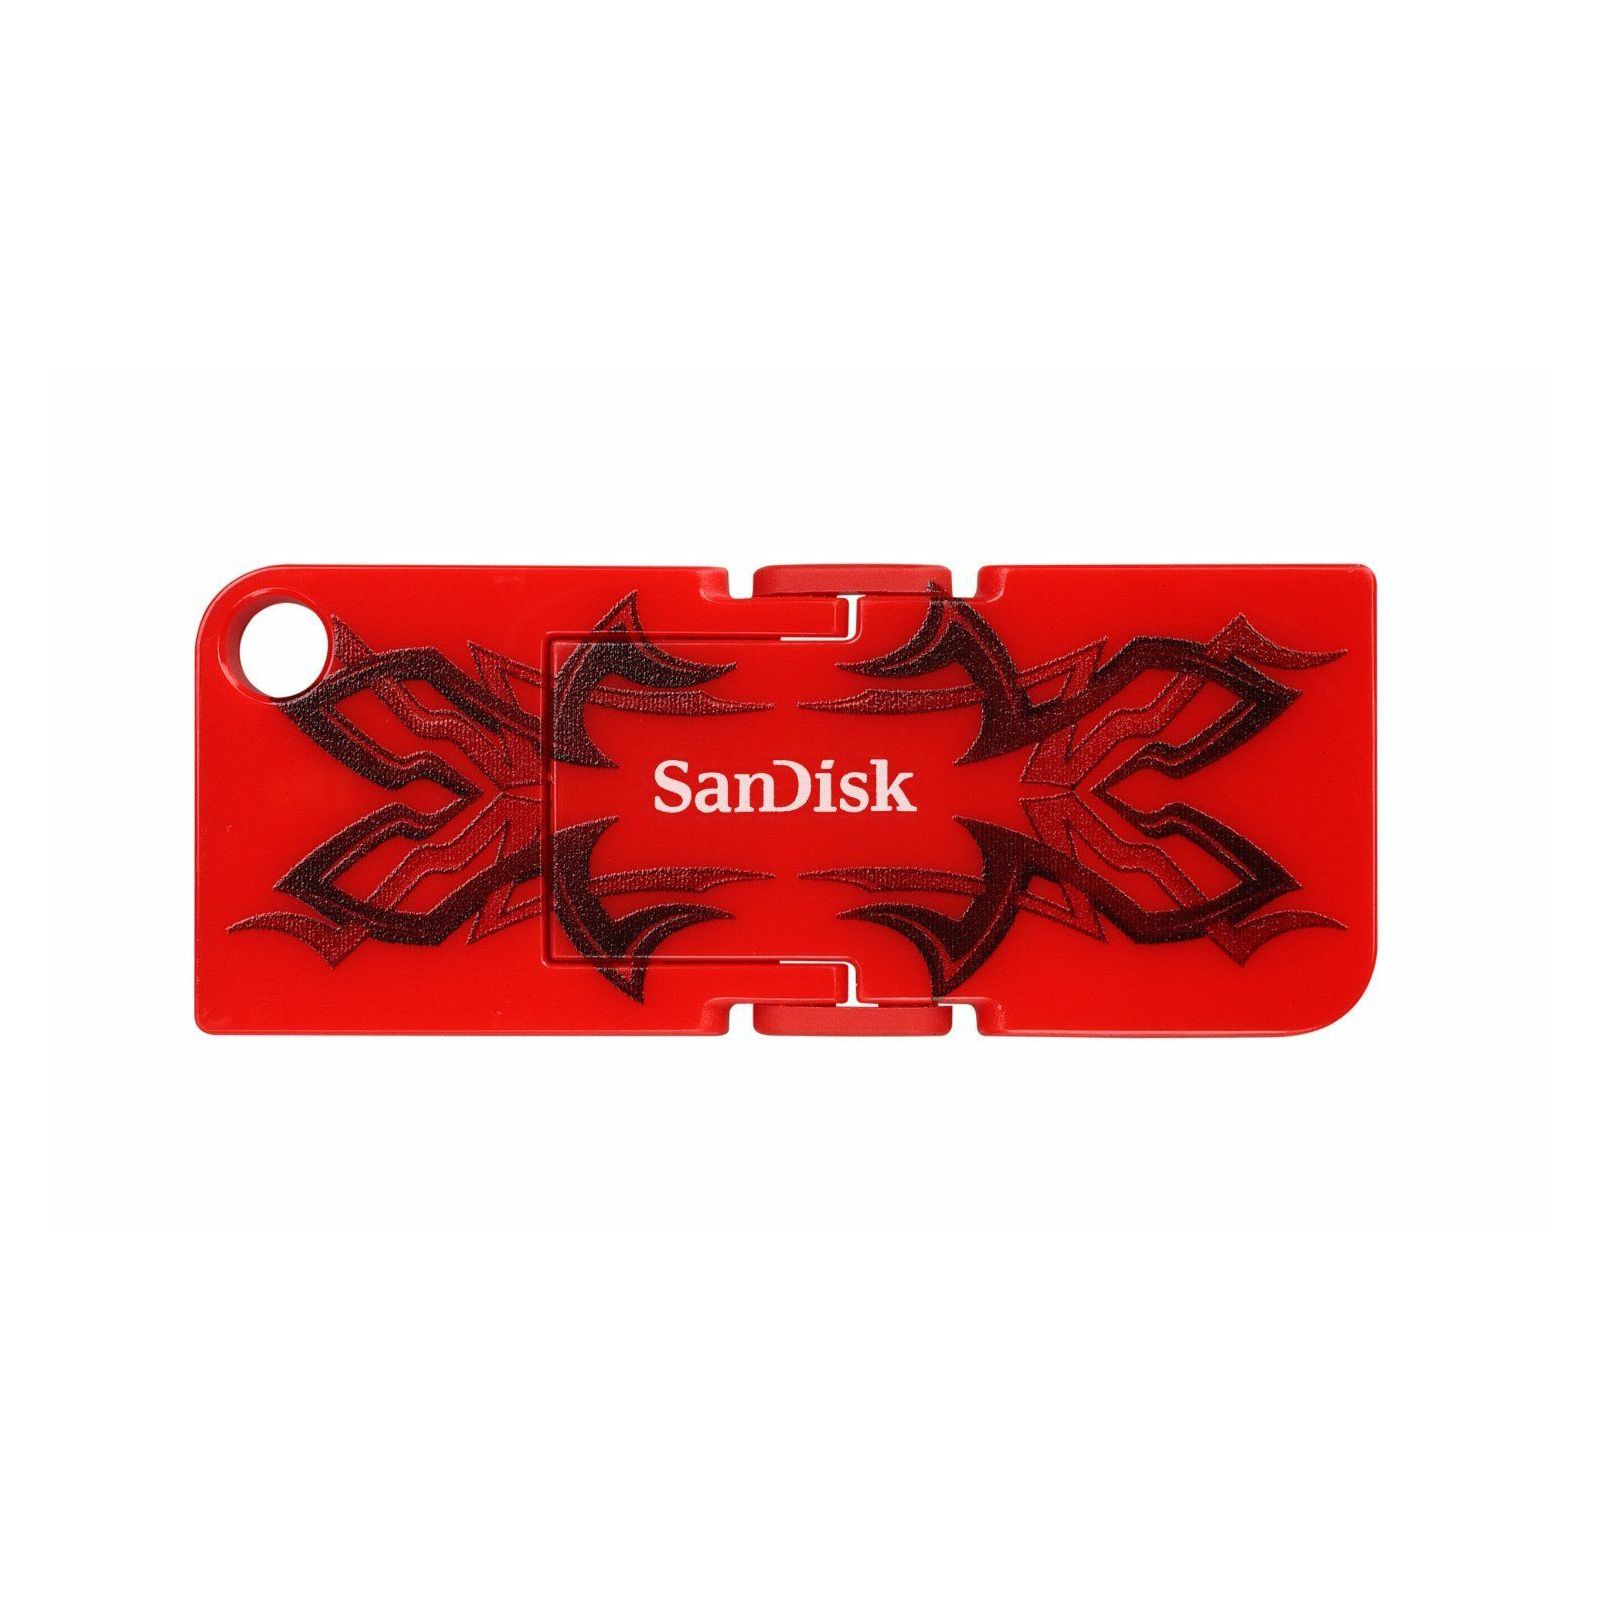 SanDisk Cruzer Pop 4GB Tribal SDCZ53B-004G-B35 USB Memory Stick